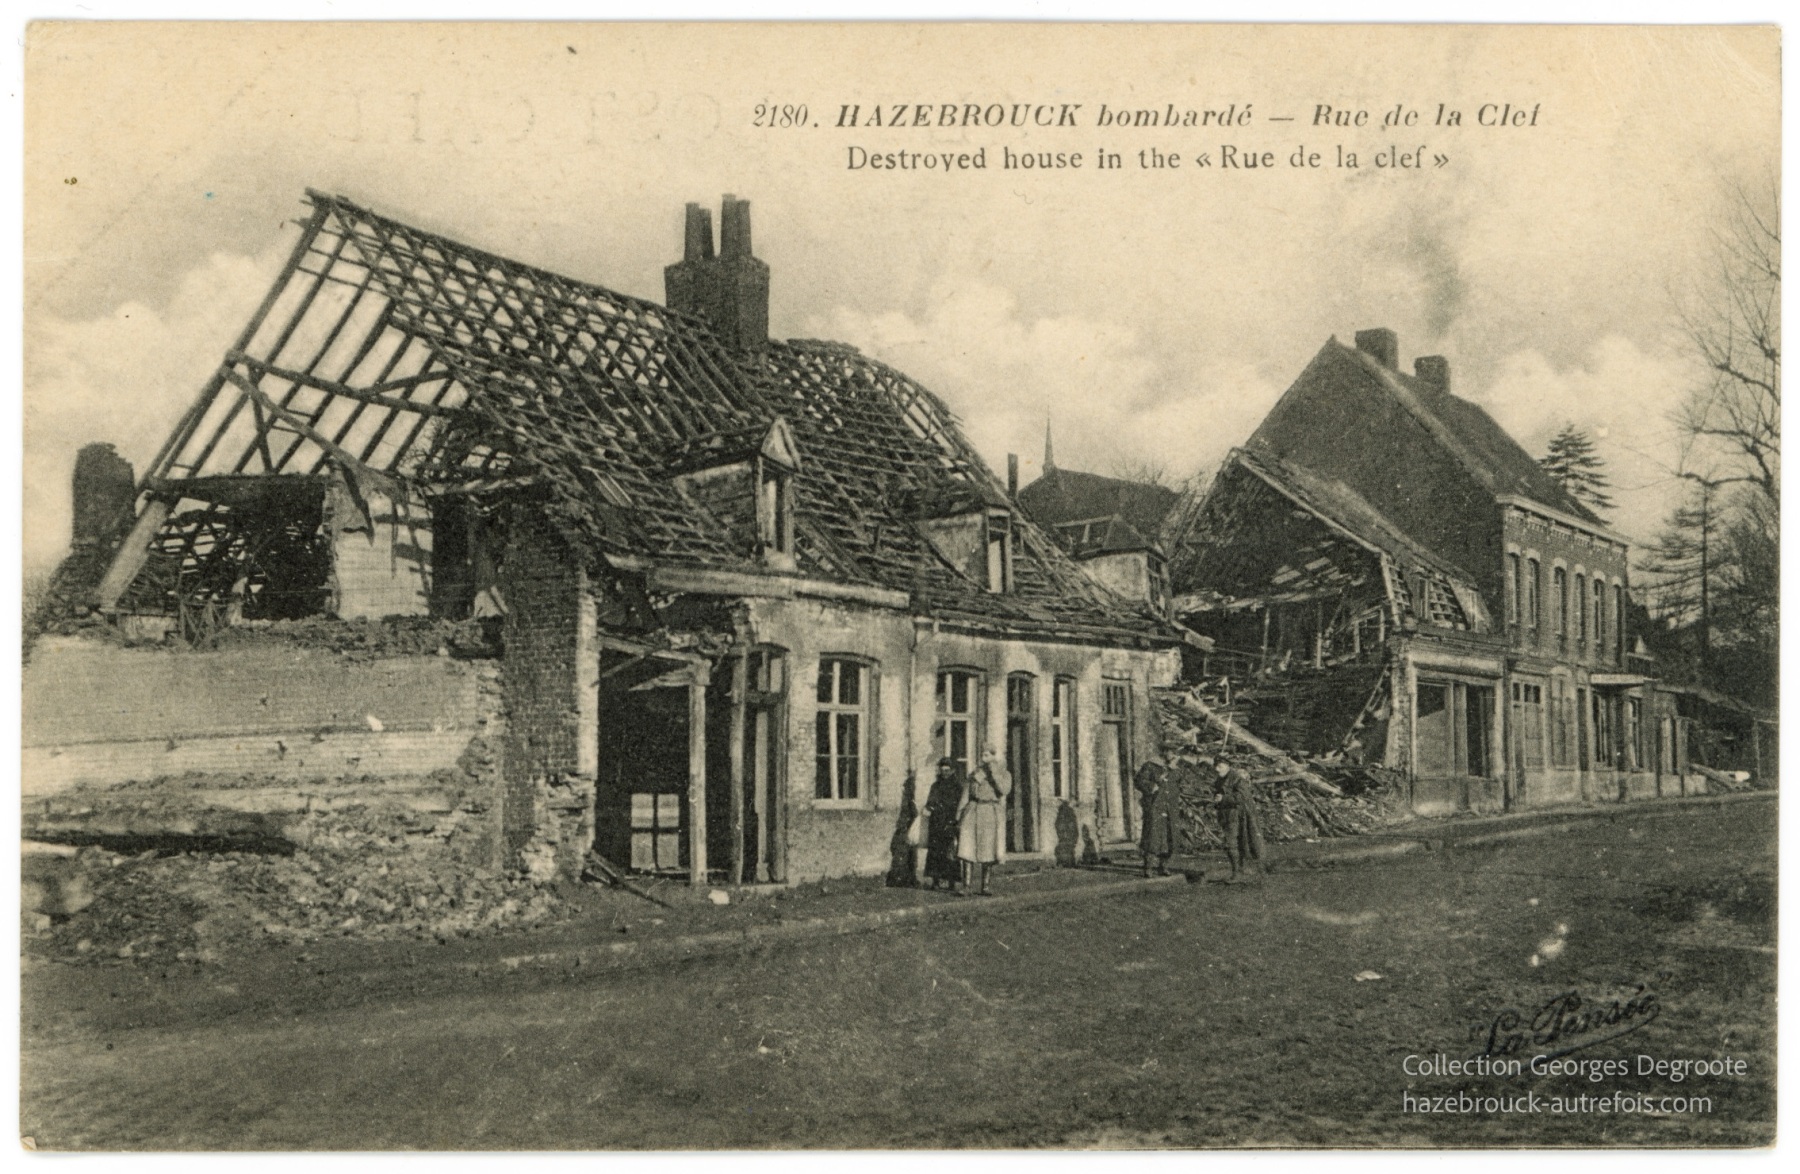 Hazebrouck bombardé - Rue de la Clef